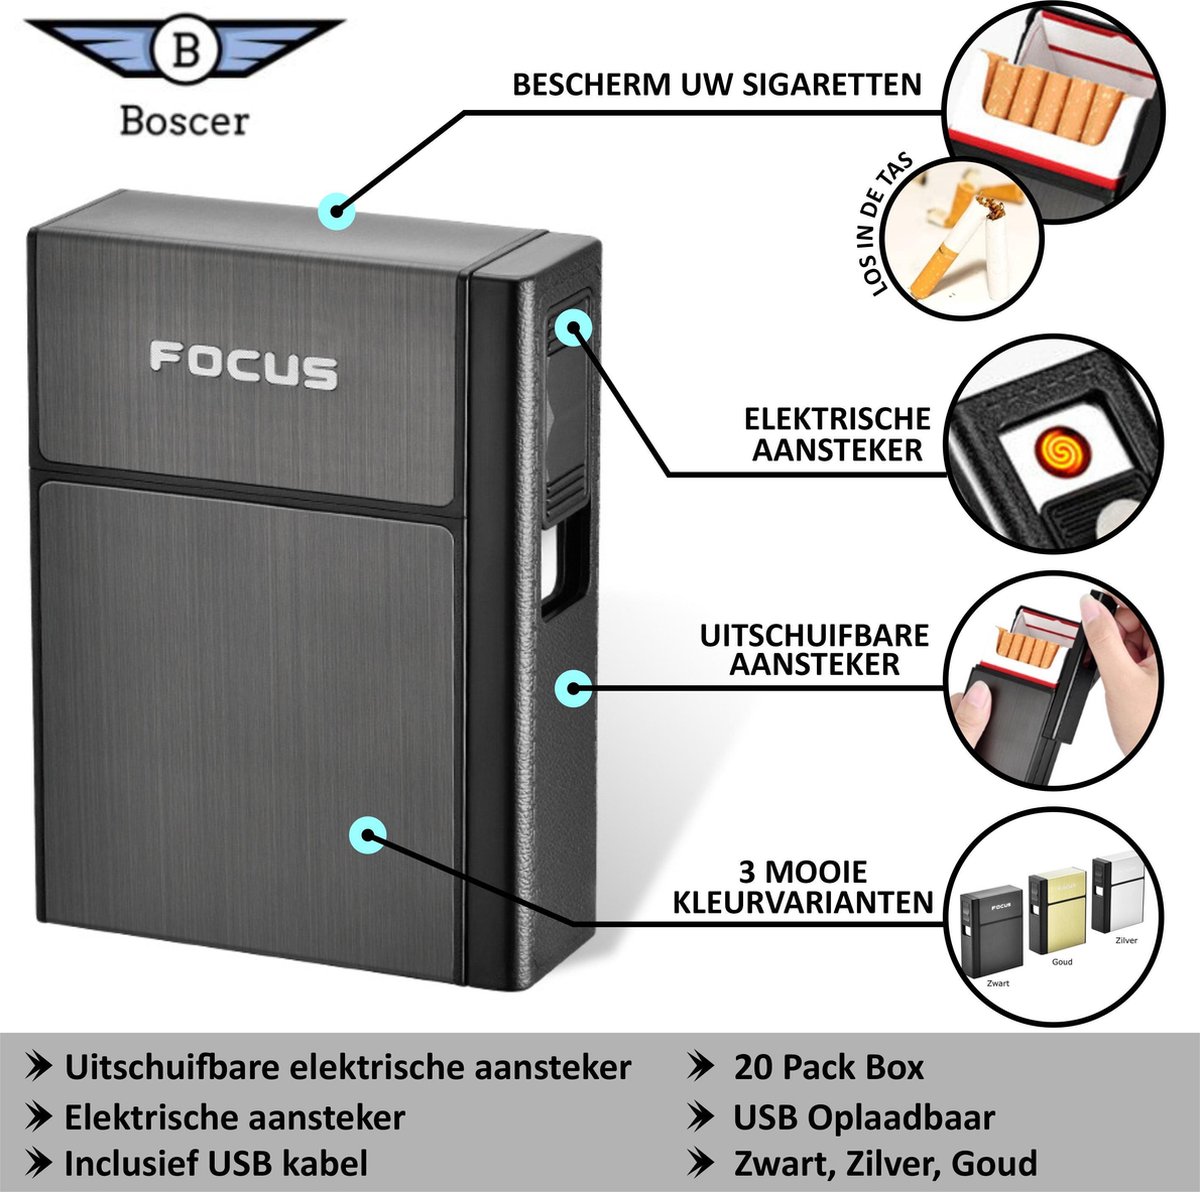 Sigaretten doosje met aansteker | Elektrisch | 20 Pack Box | Beschermdoos |  USB... | bol.com